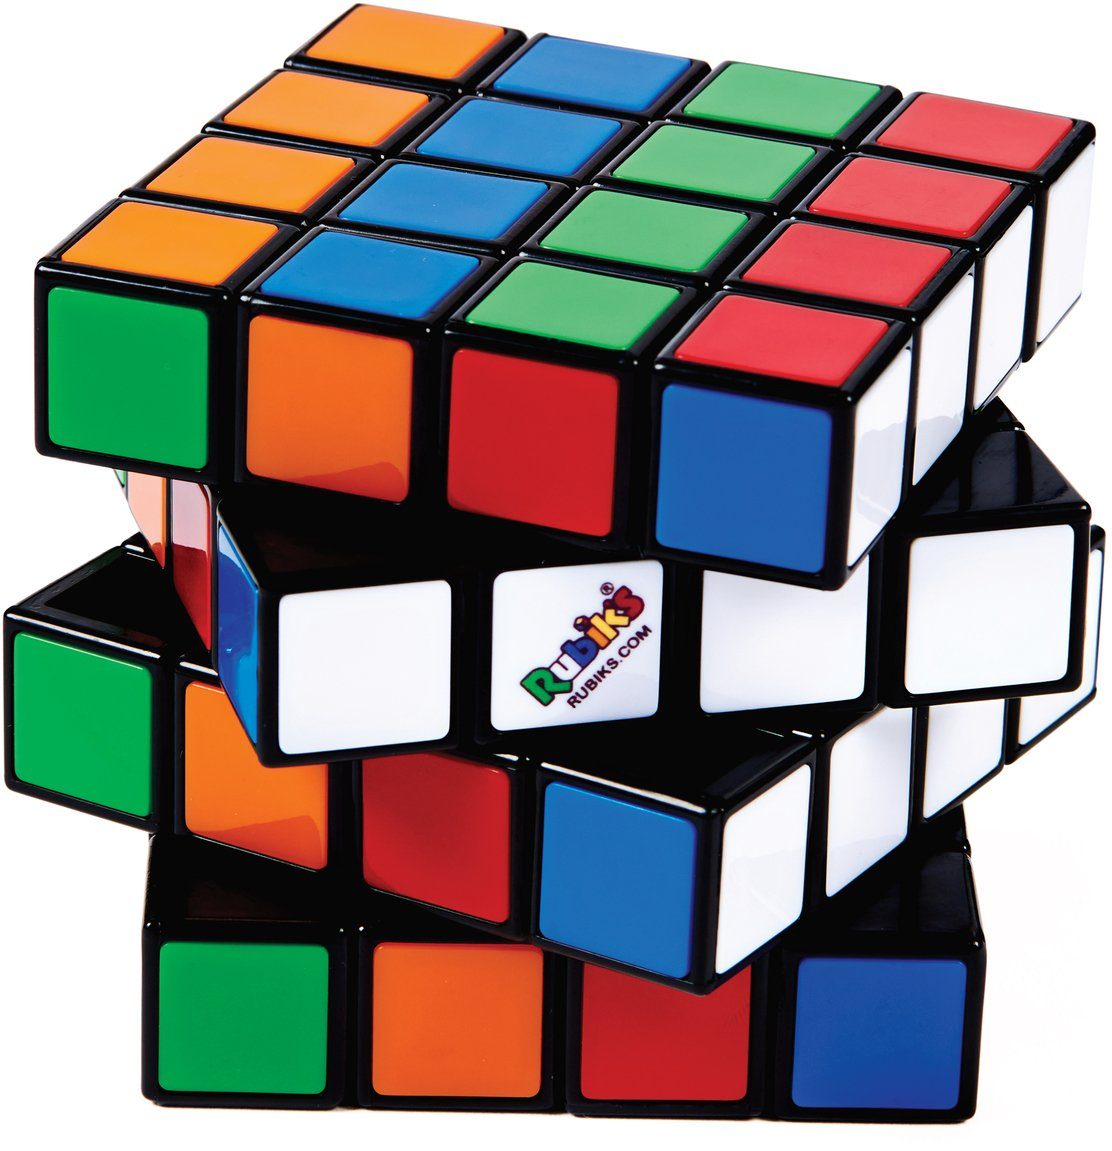 Thinkfun® Spiel, Master Rubik's 22 Knobelspiel